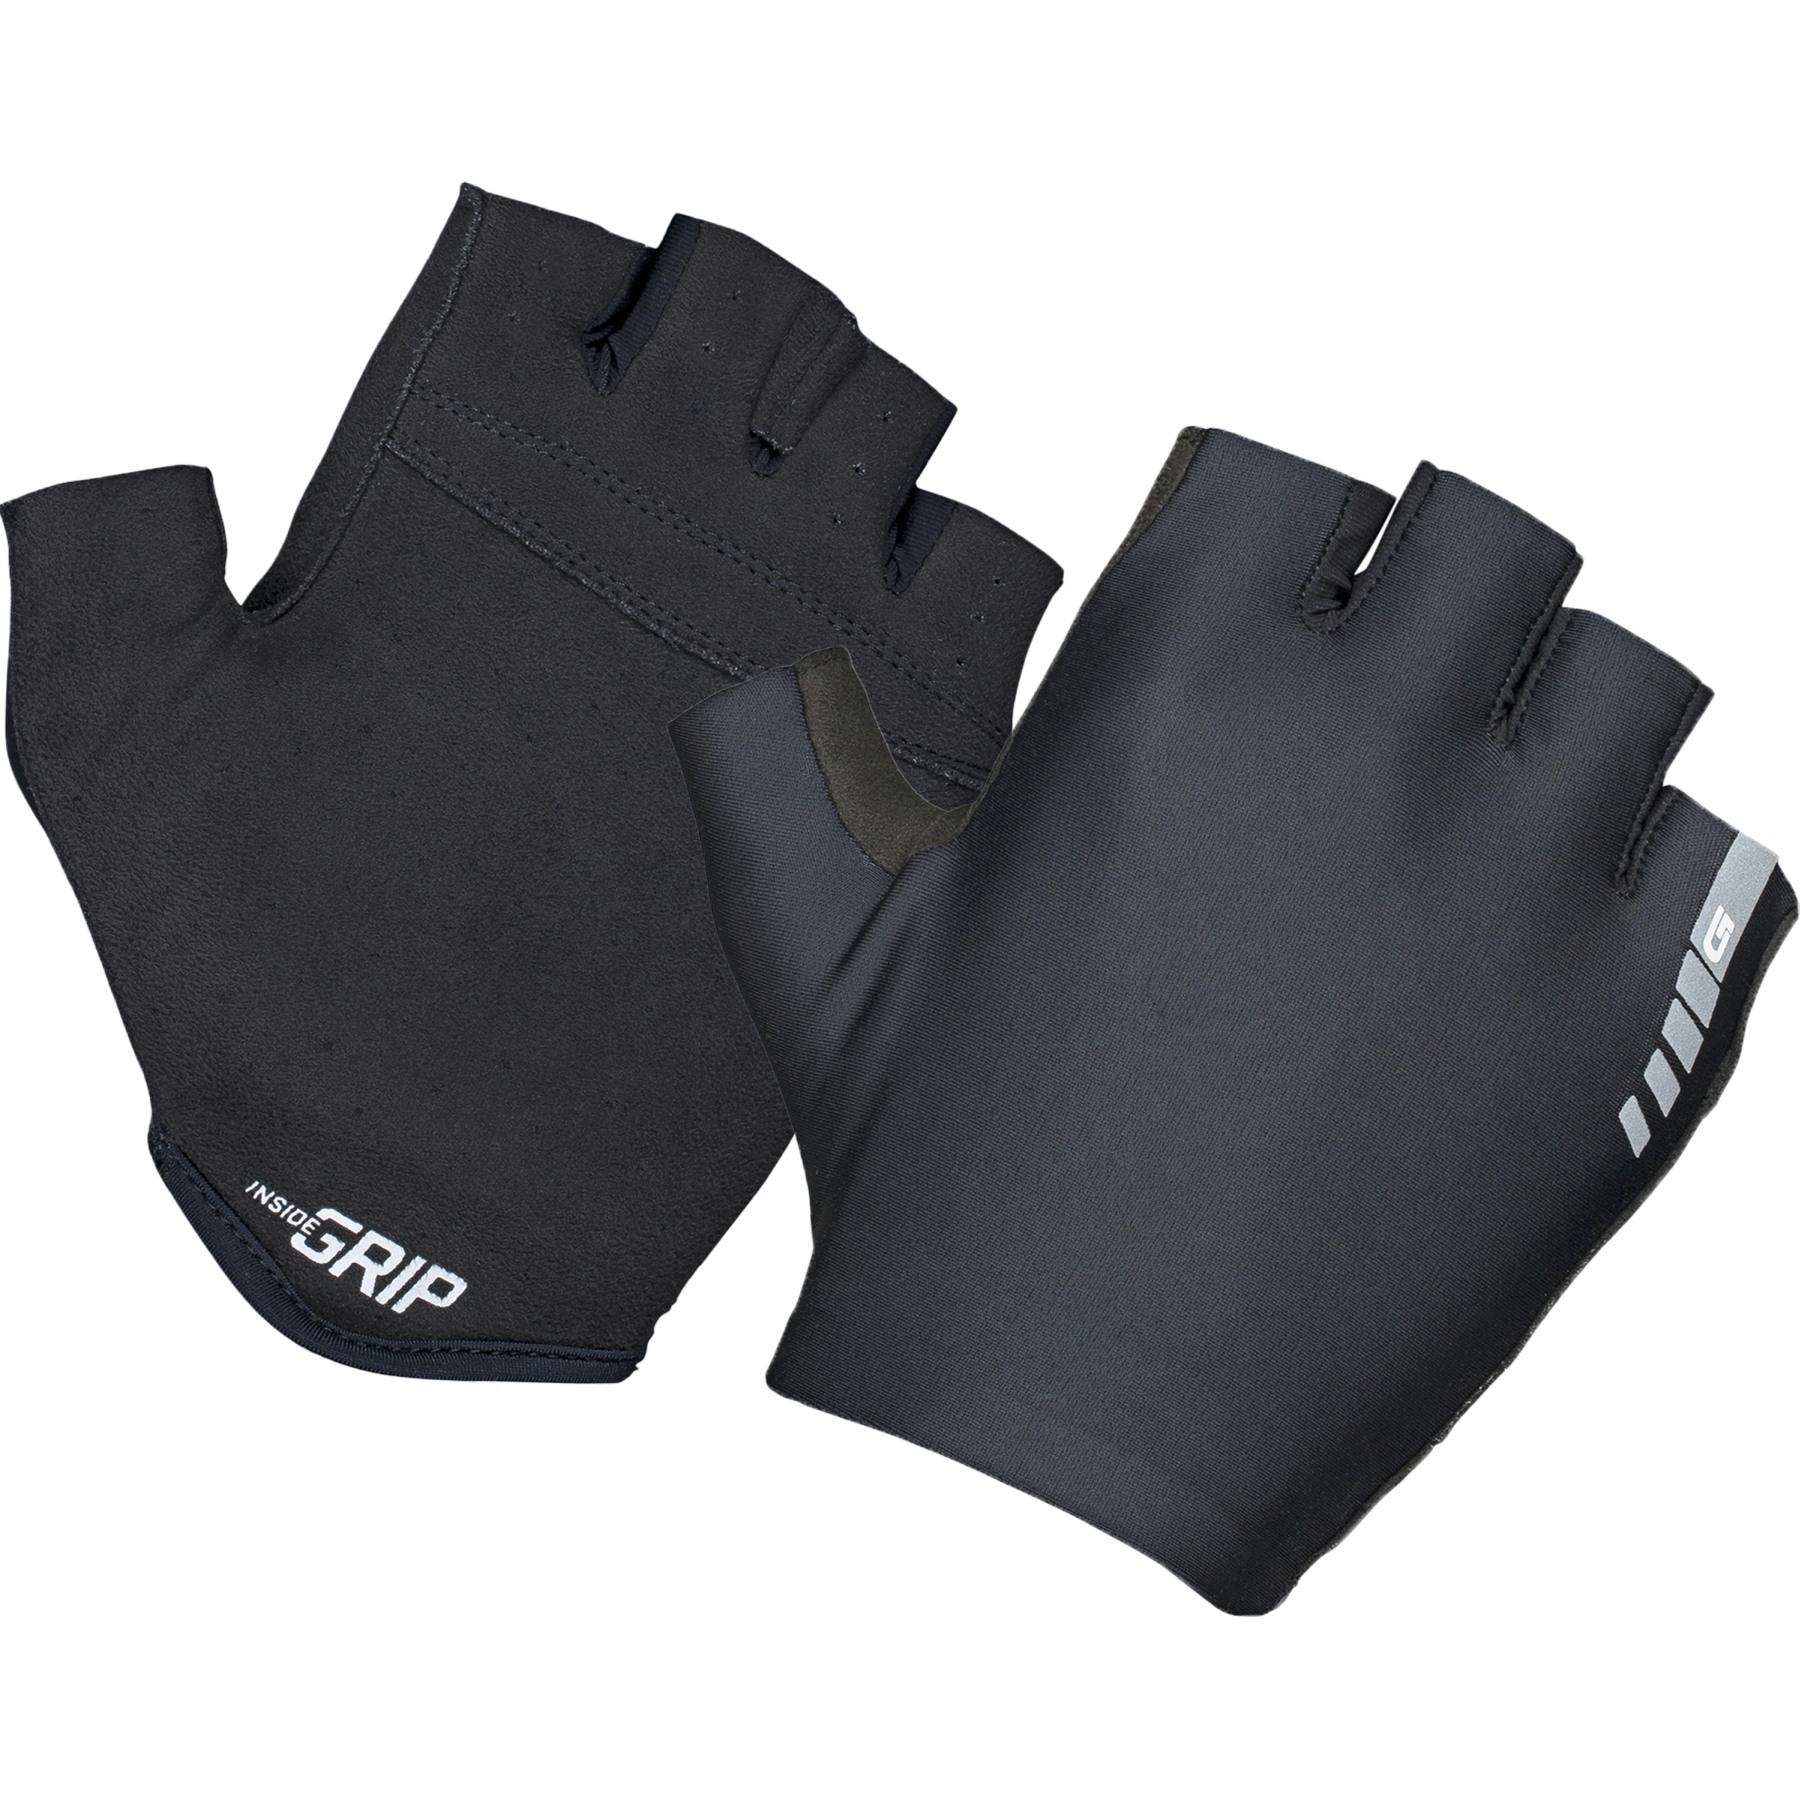 Productfoto van GripGrab Aerolite InsideGrip™ Handschoenen met Korte Vingers - Black